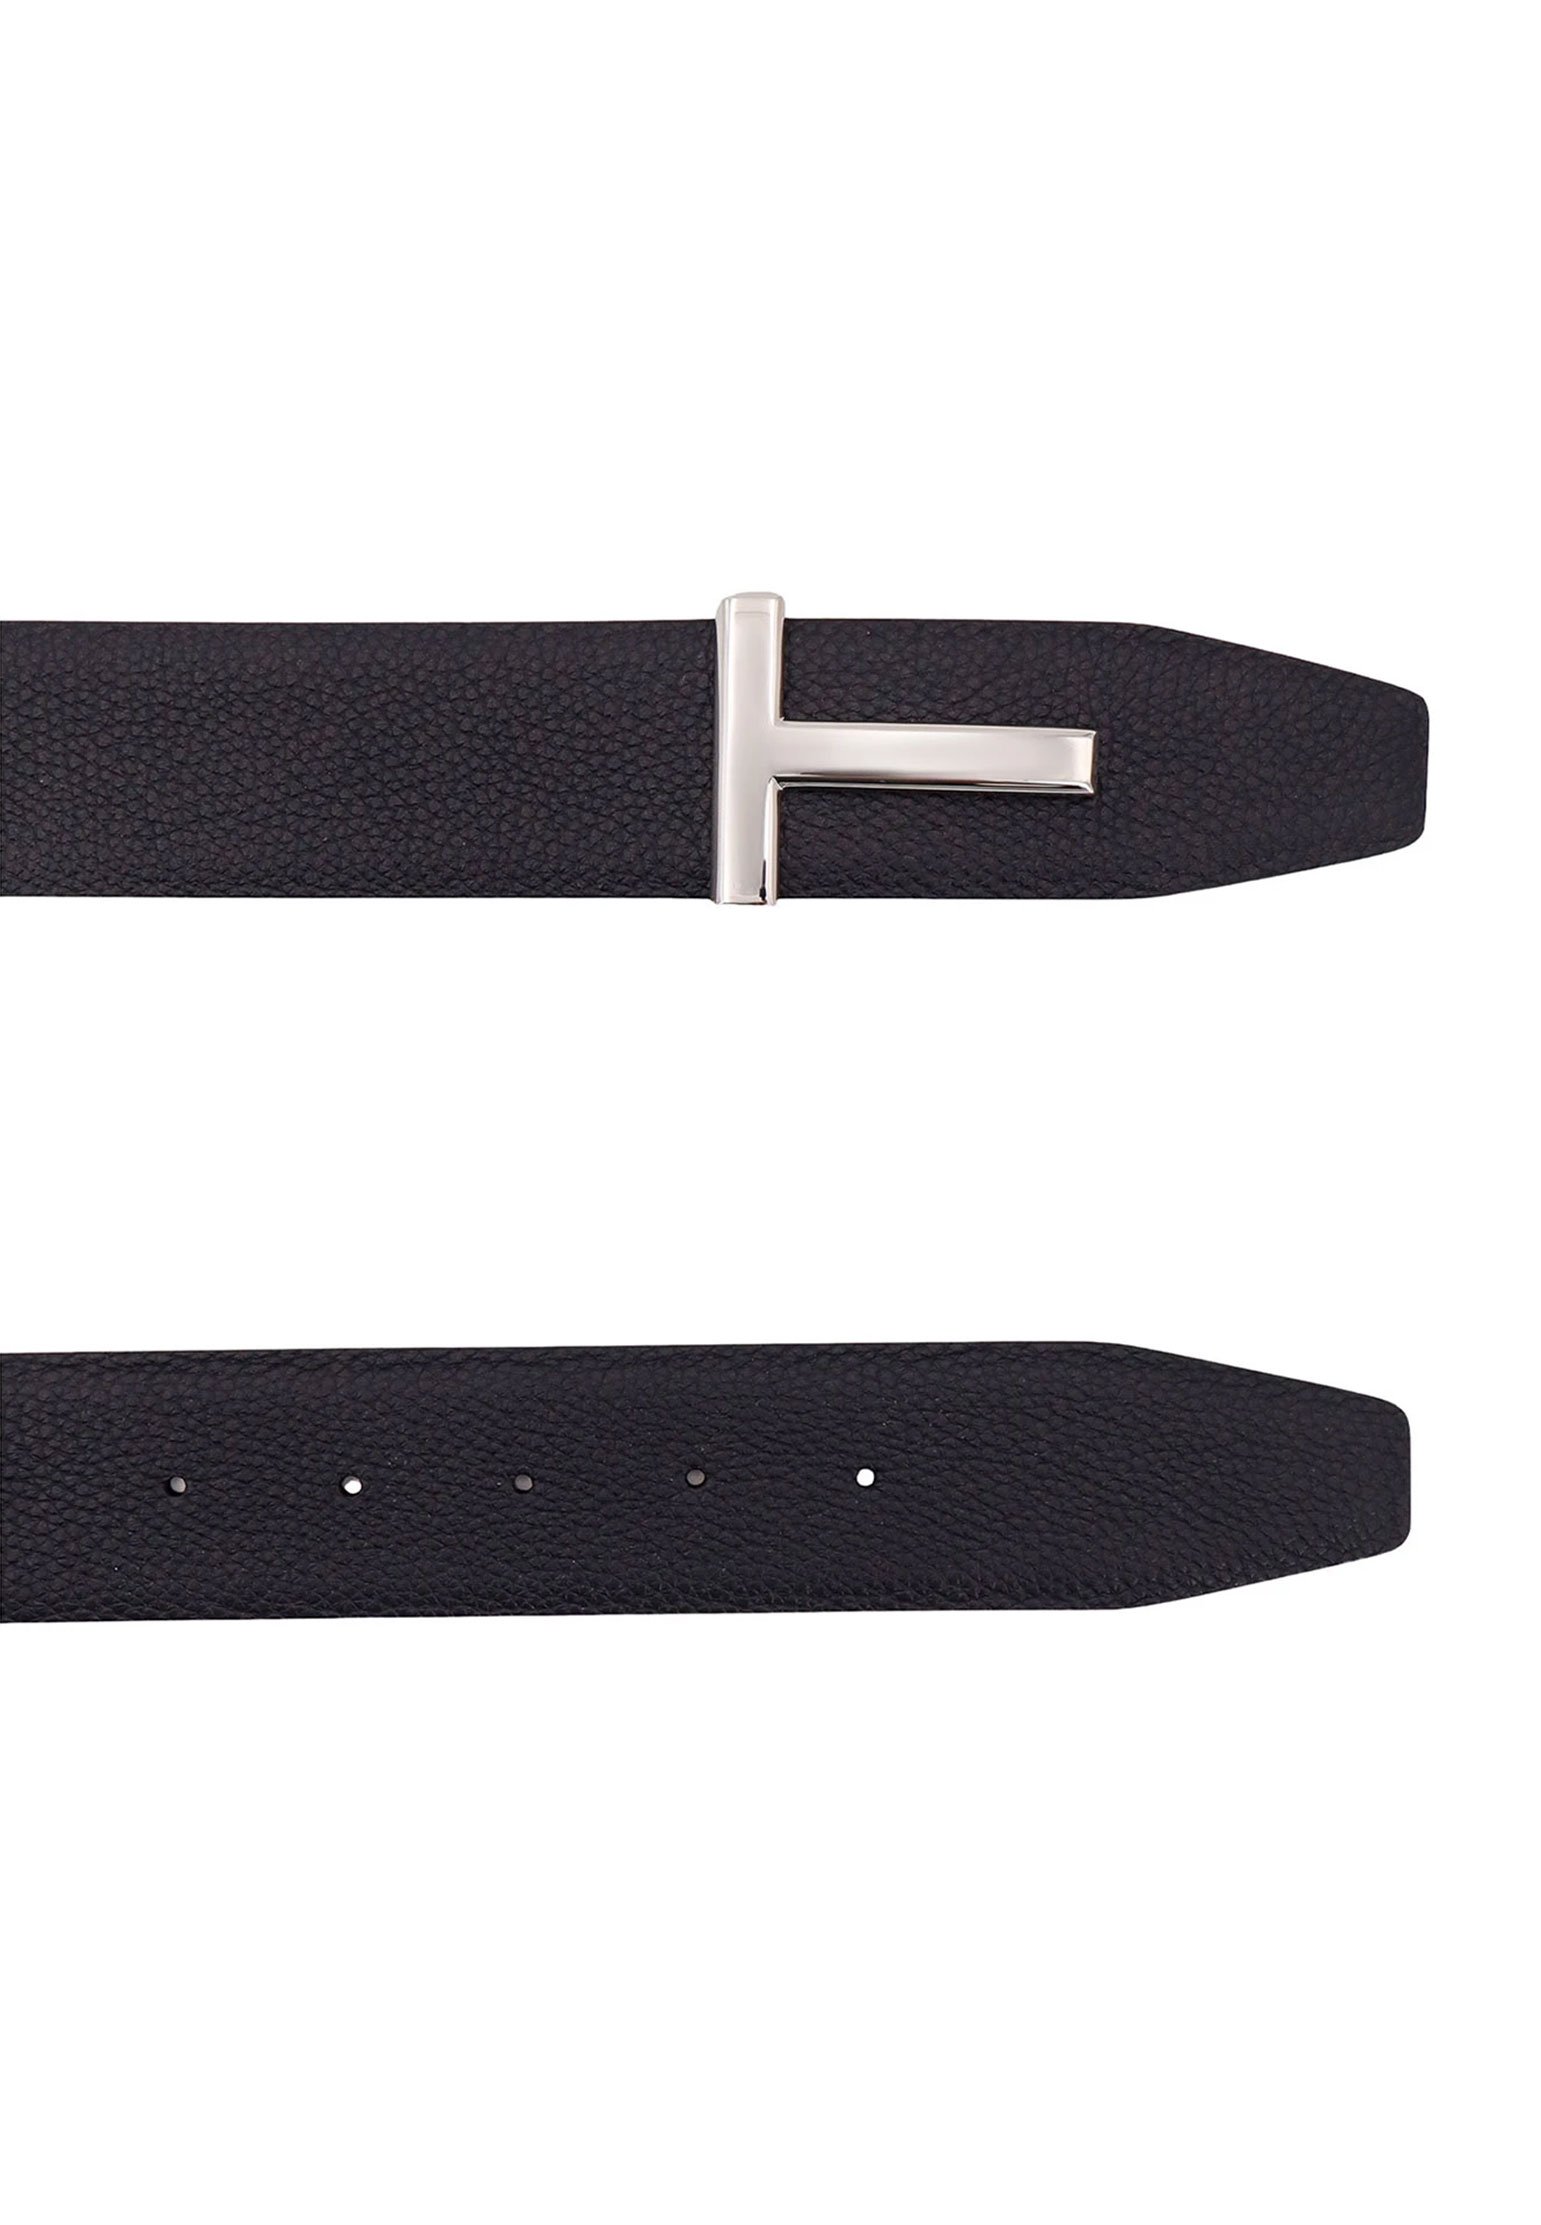 Belt TOM FORD Color: black (Code: 2146) in online store Allure